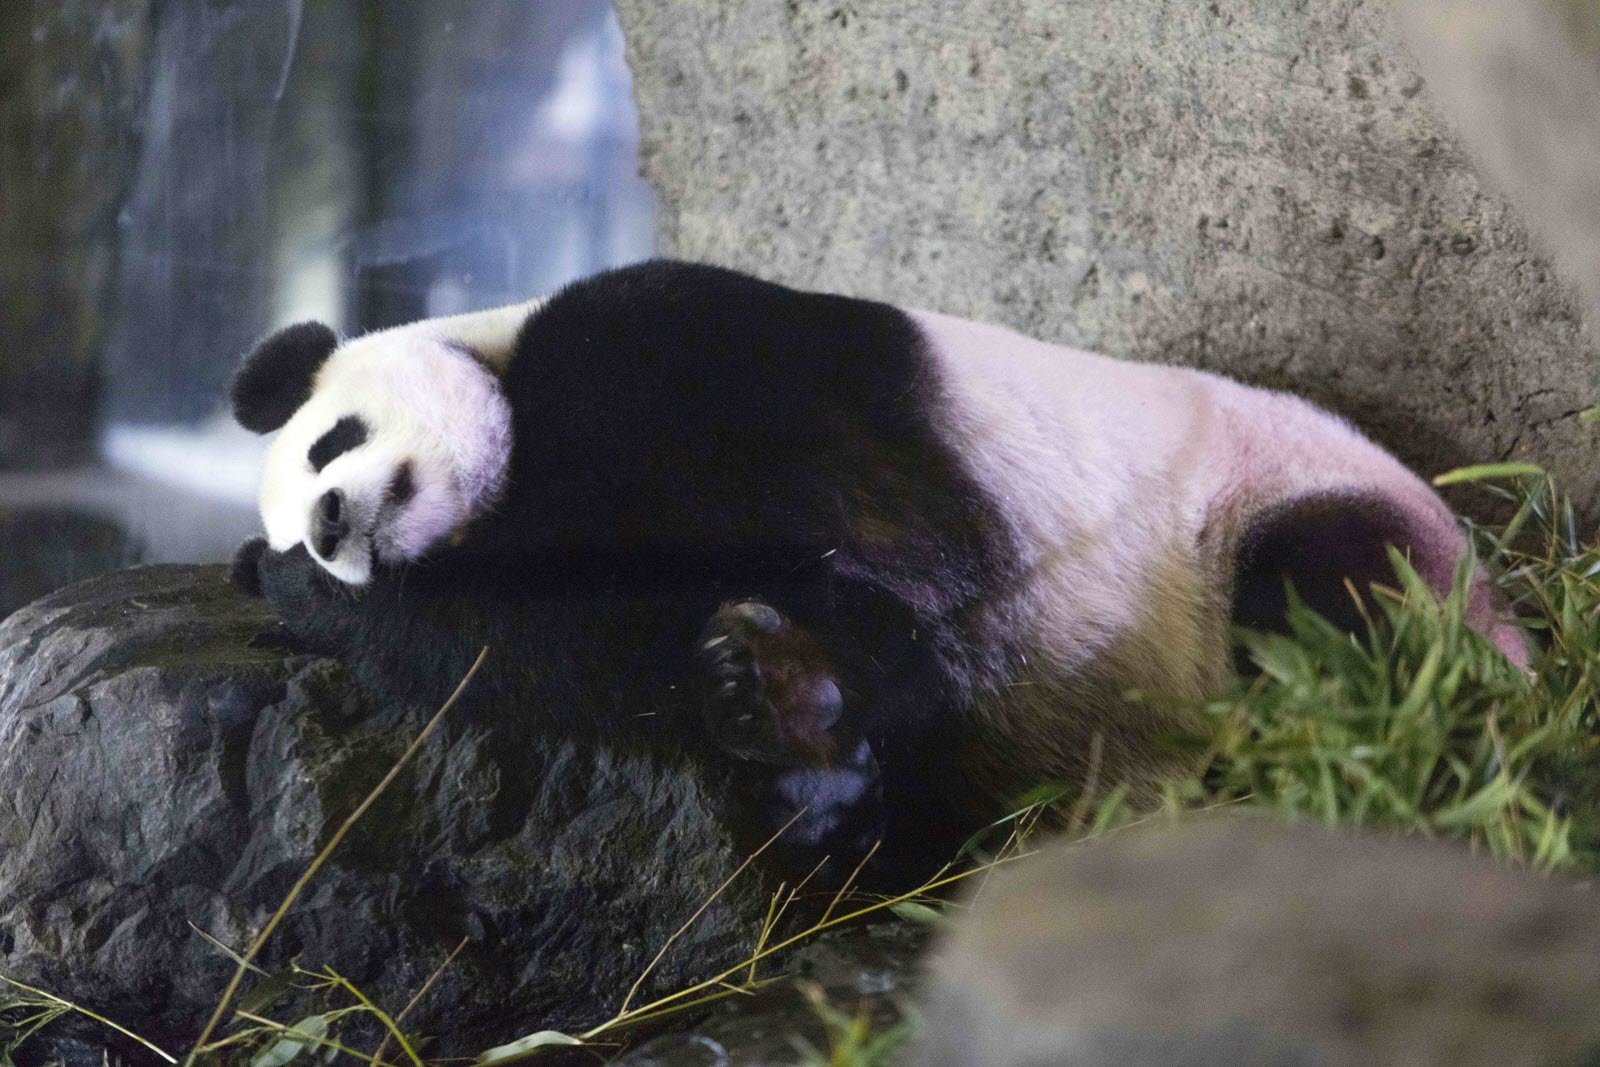 За поведением панды во время кормления. Беременность панды. Панда животик. ,Thtvtyyjcnm e GFYL.